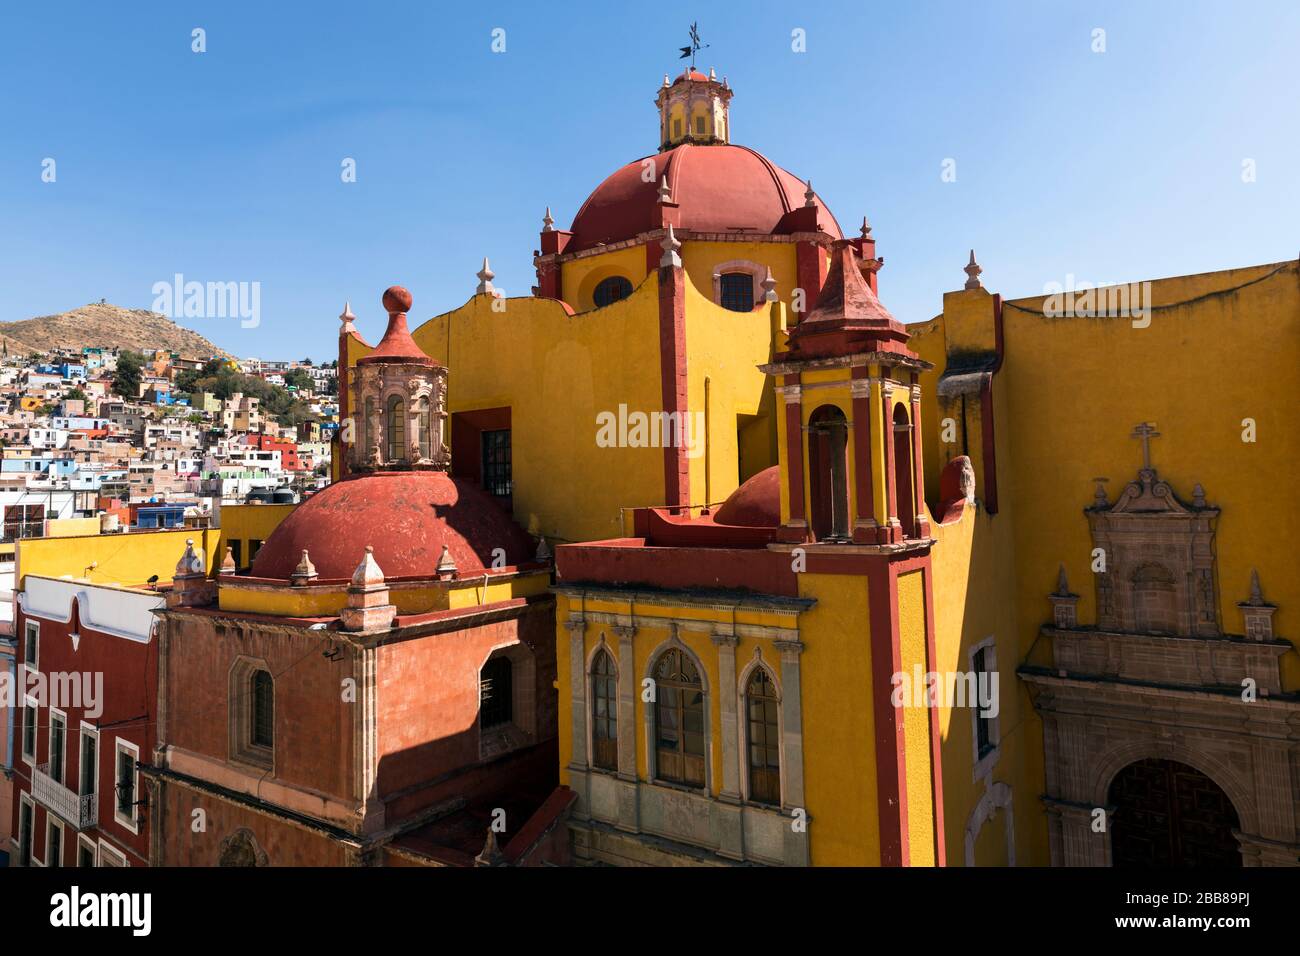 Messico, Guanajuato, la Basïlica de Nuestra Seńora de Guanjuato, la chiesa principale della città. Architettura coloniale spagnola. Foto Stock